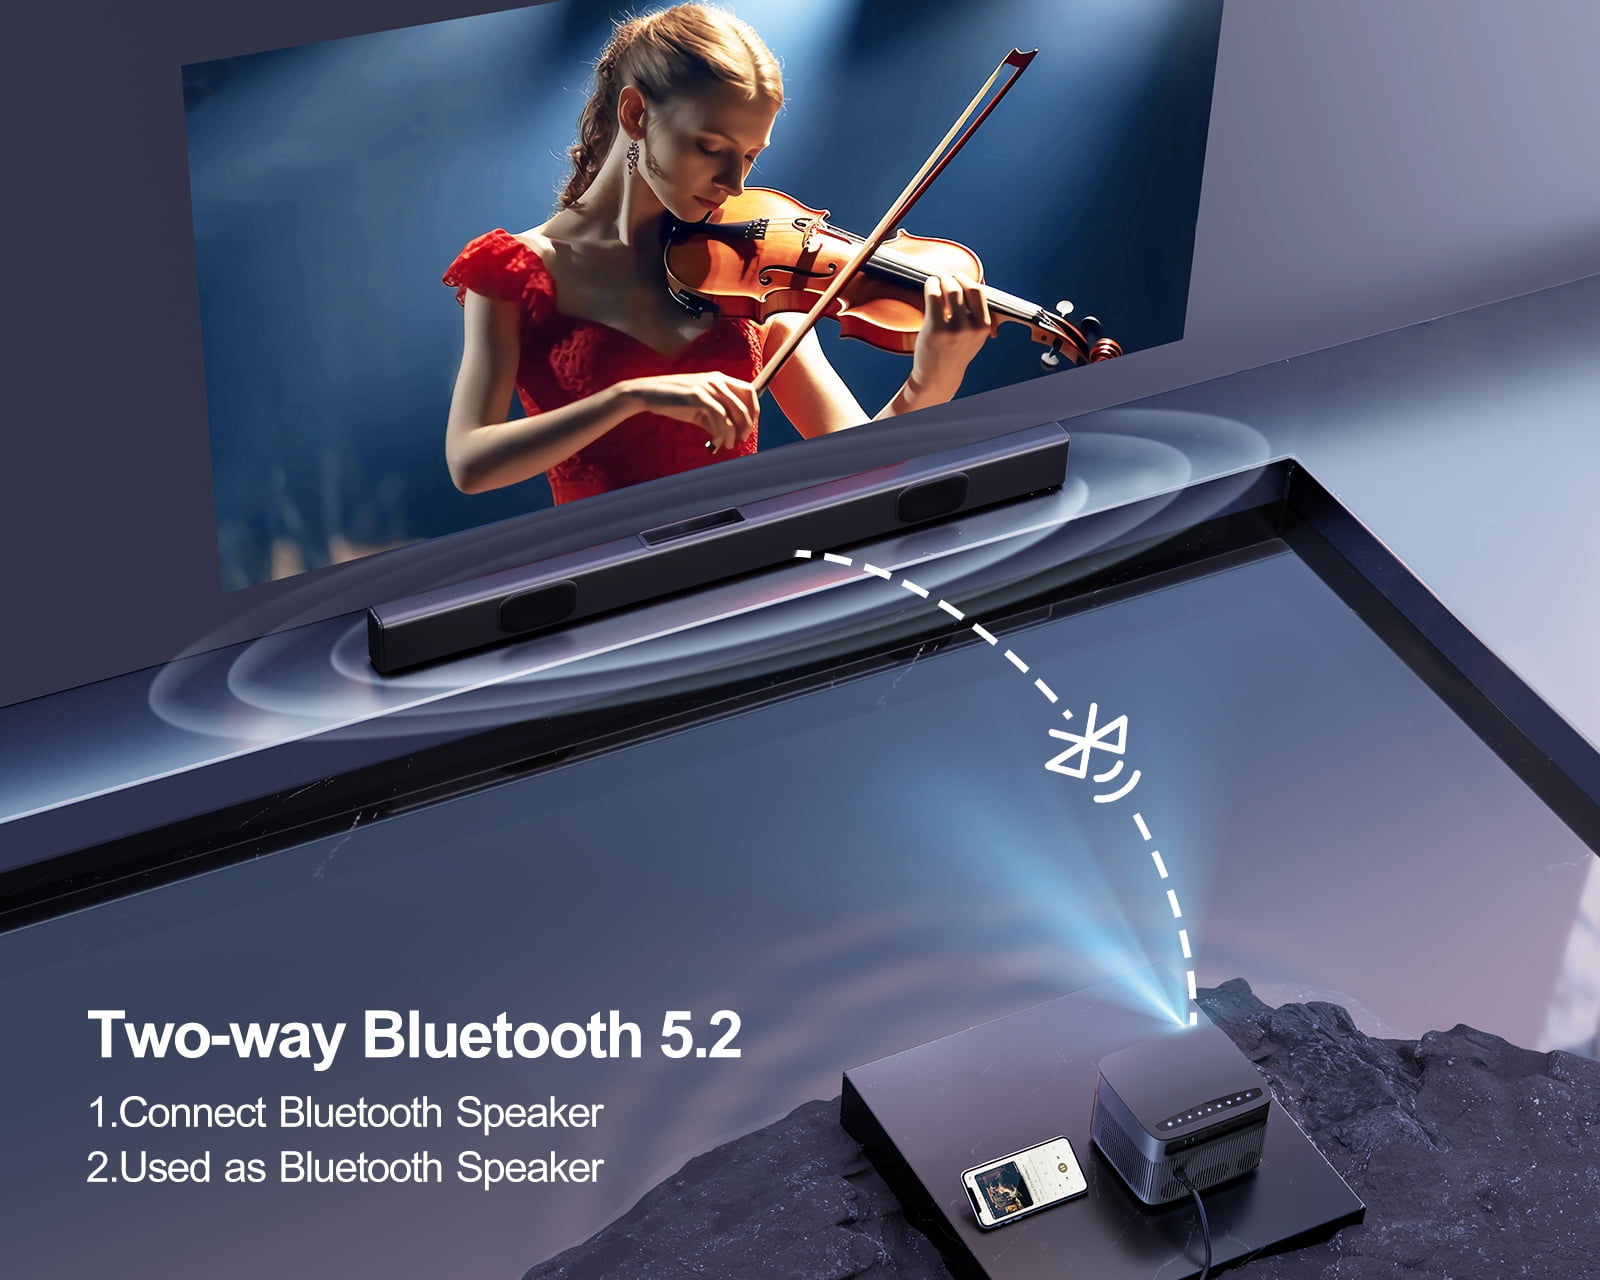 Auto Focus/Keystone】 Vidéoprojecteur WiFi Bluetooth 4K, 20000 Lumens  Vidéoprojecteur WiFi Full HD 1080P 4K Supporté WiMiUS Projecteur WiFi-6  Home Cinéma 300'' pour iOS/Android/TV Stick/PS5 HDMI AV : :  High-Tech